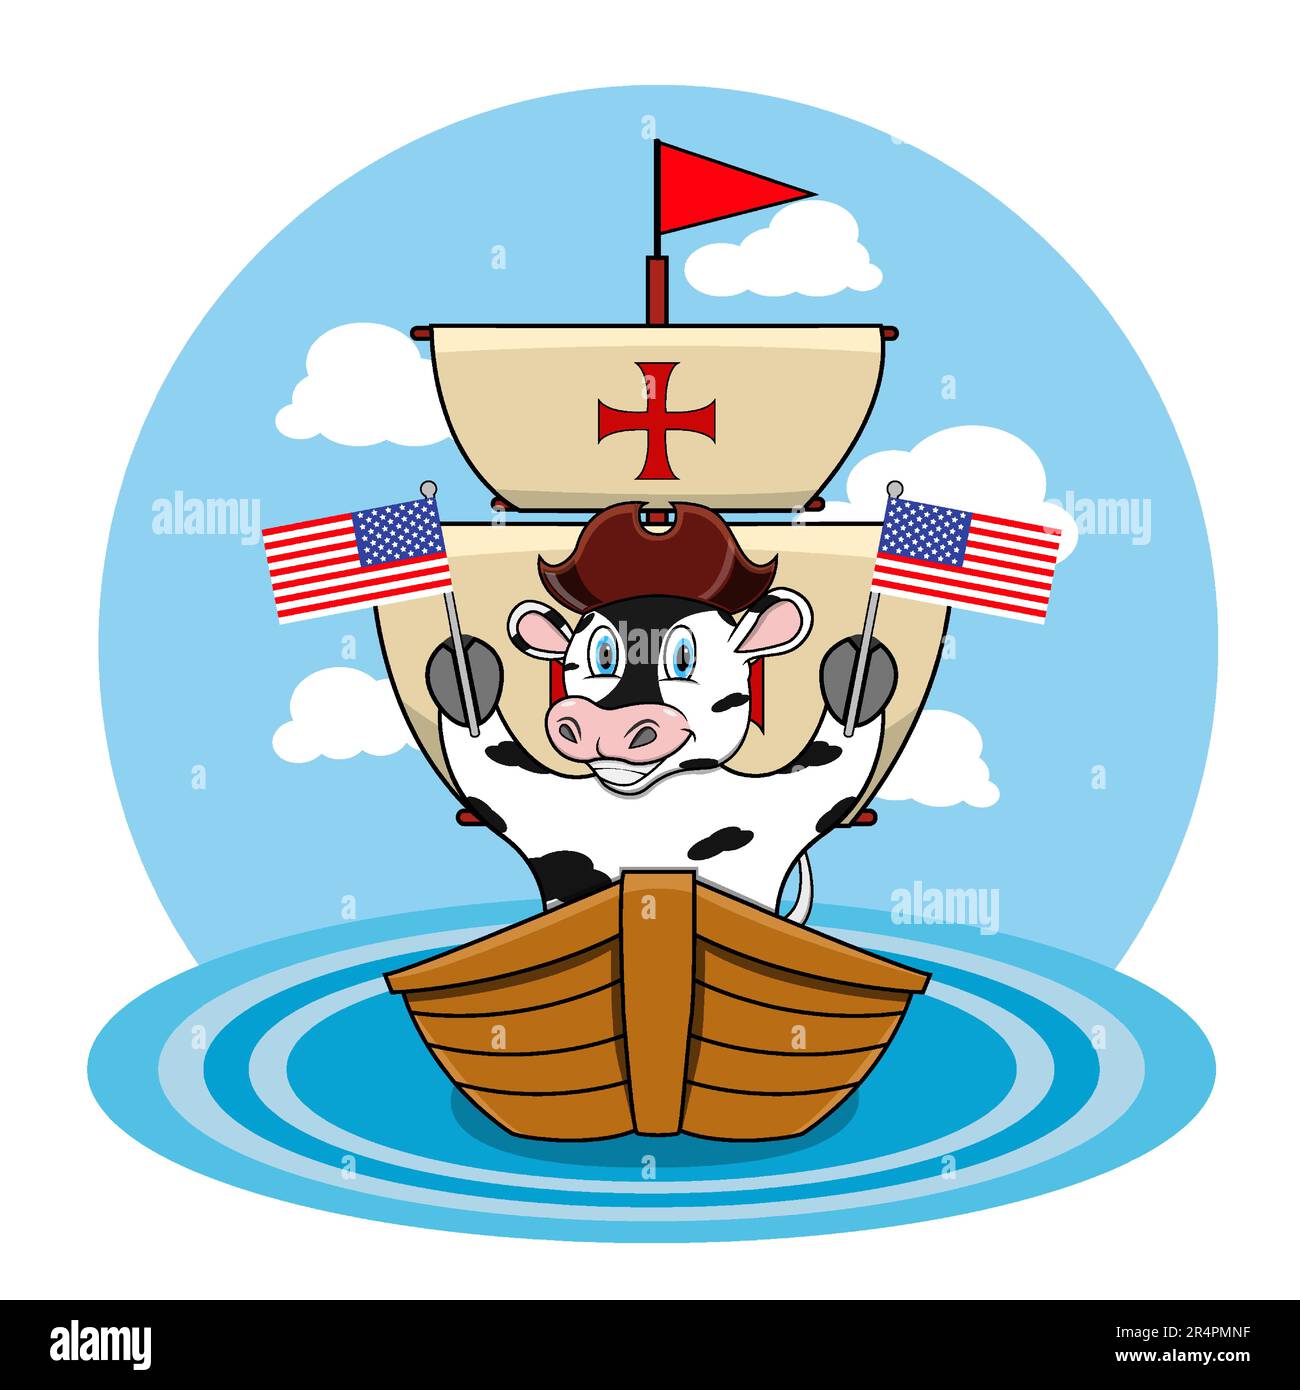 Happy Columbus Day America Mit Süßer Kuh Und Schiff Im Meer, Cartoon, Maskottchen, Tieren, Charakter, Vektor und Illustration. Stock Vektor